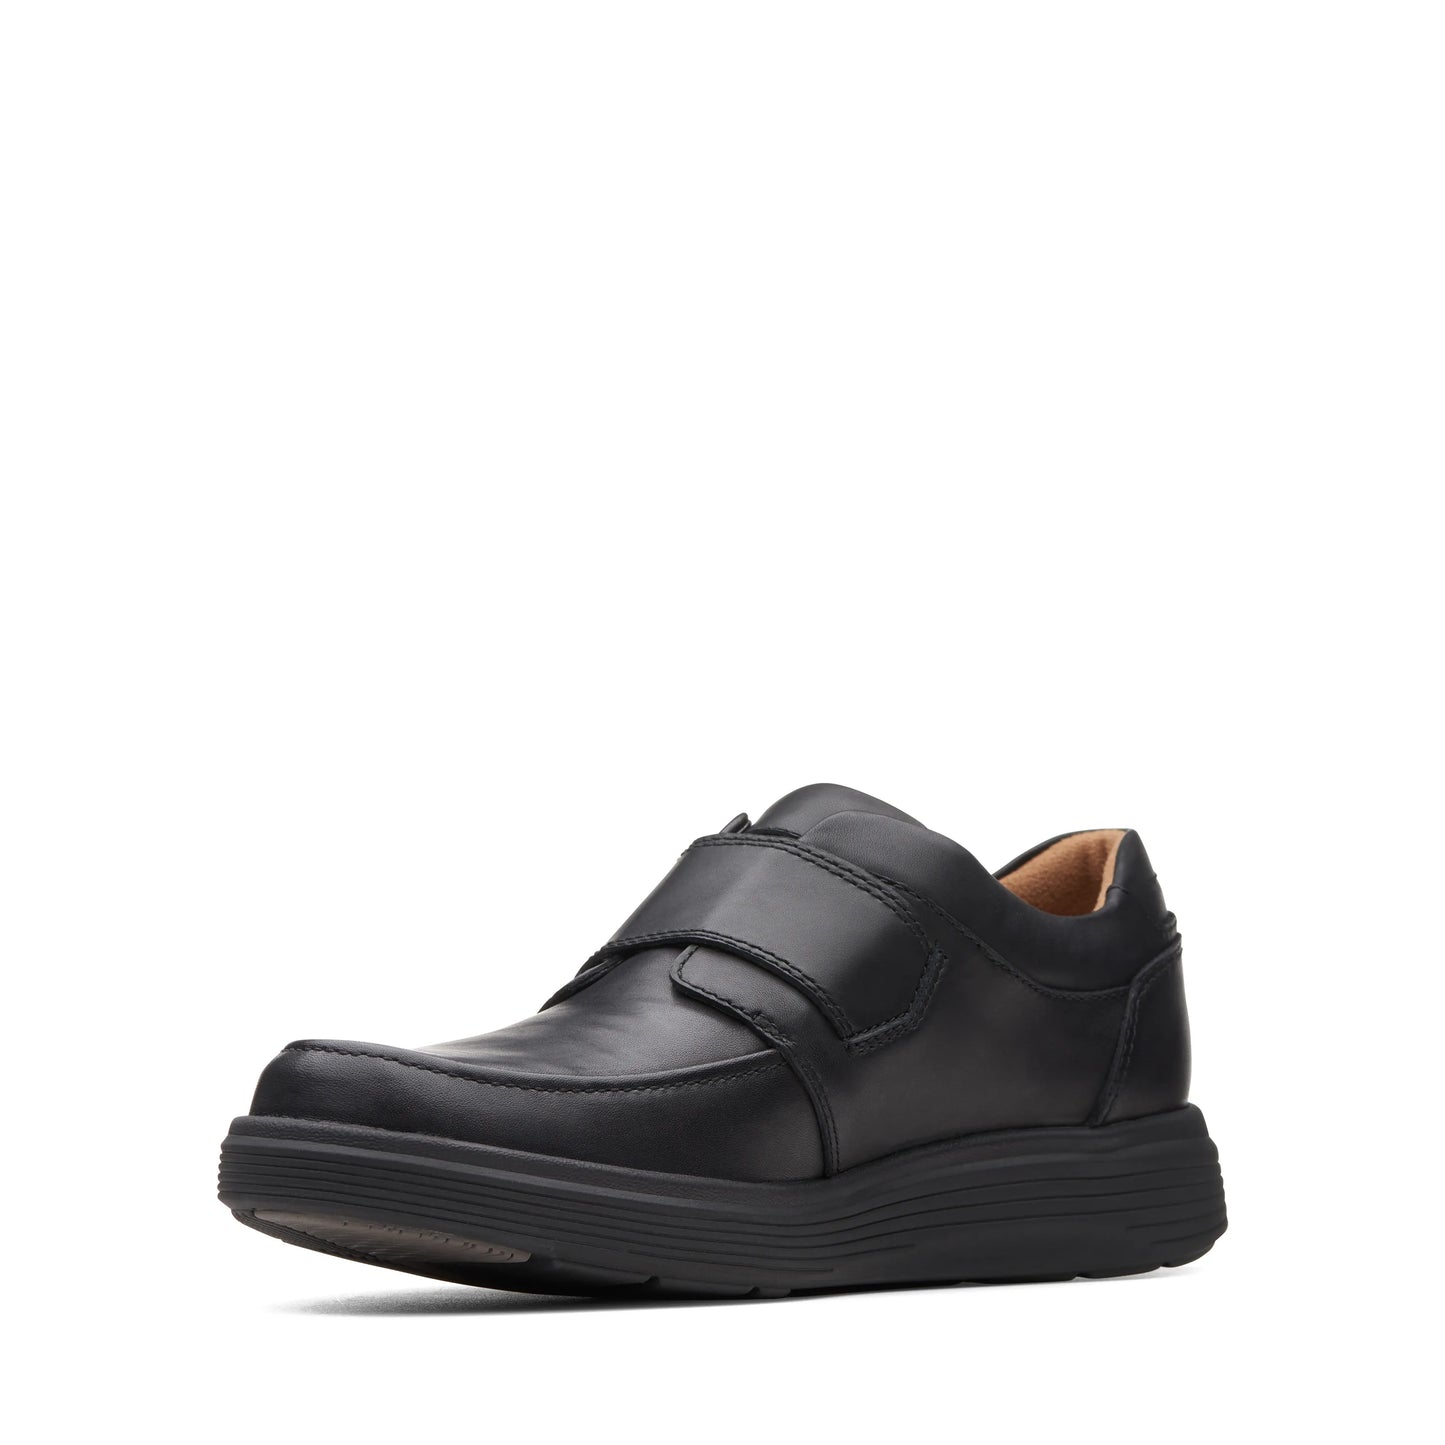 Zapatos Derby De La Marca Clarks Para Hombre Modelo Un Abode Strap Black Leather En Color Negro